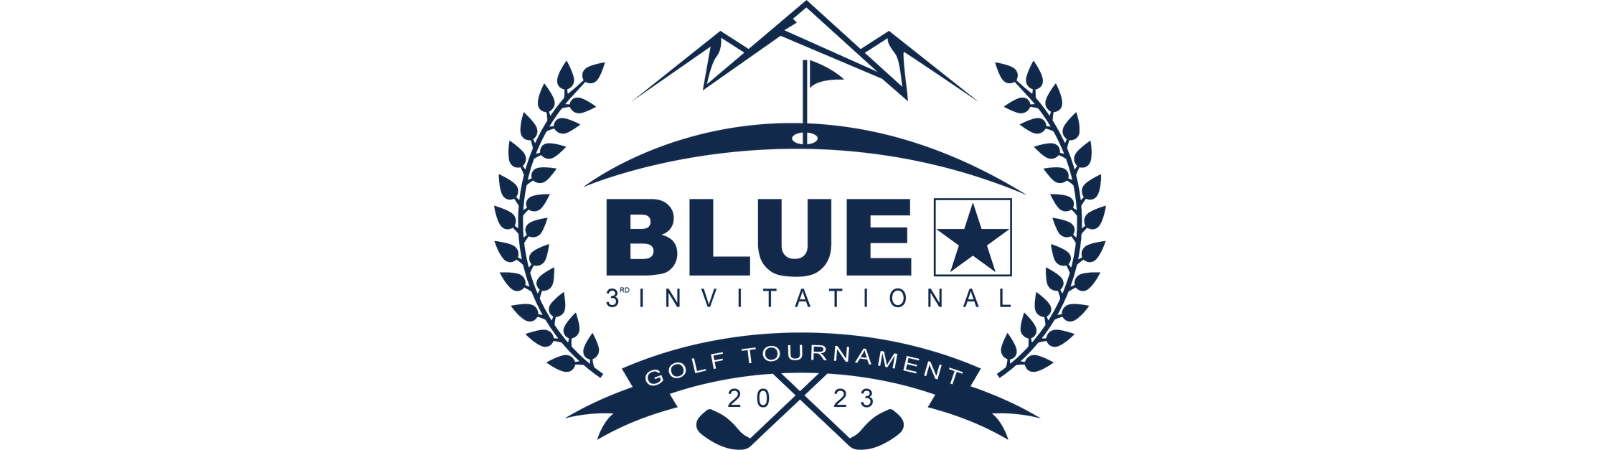 Bluestar Golf Tournament Banner